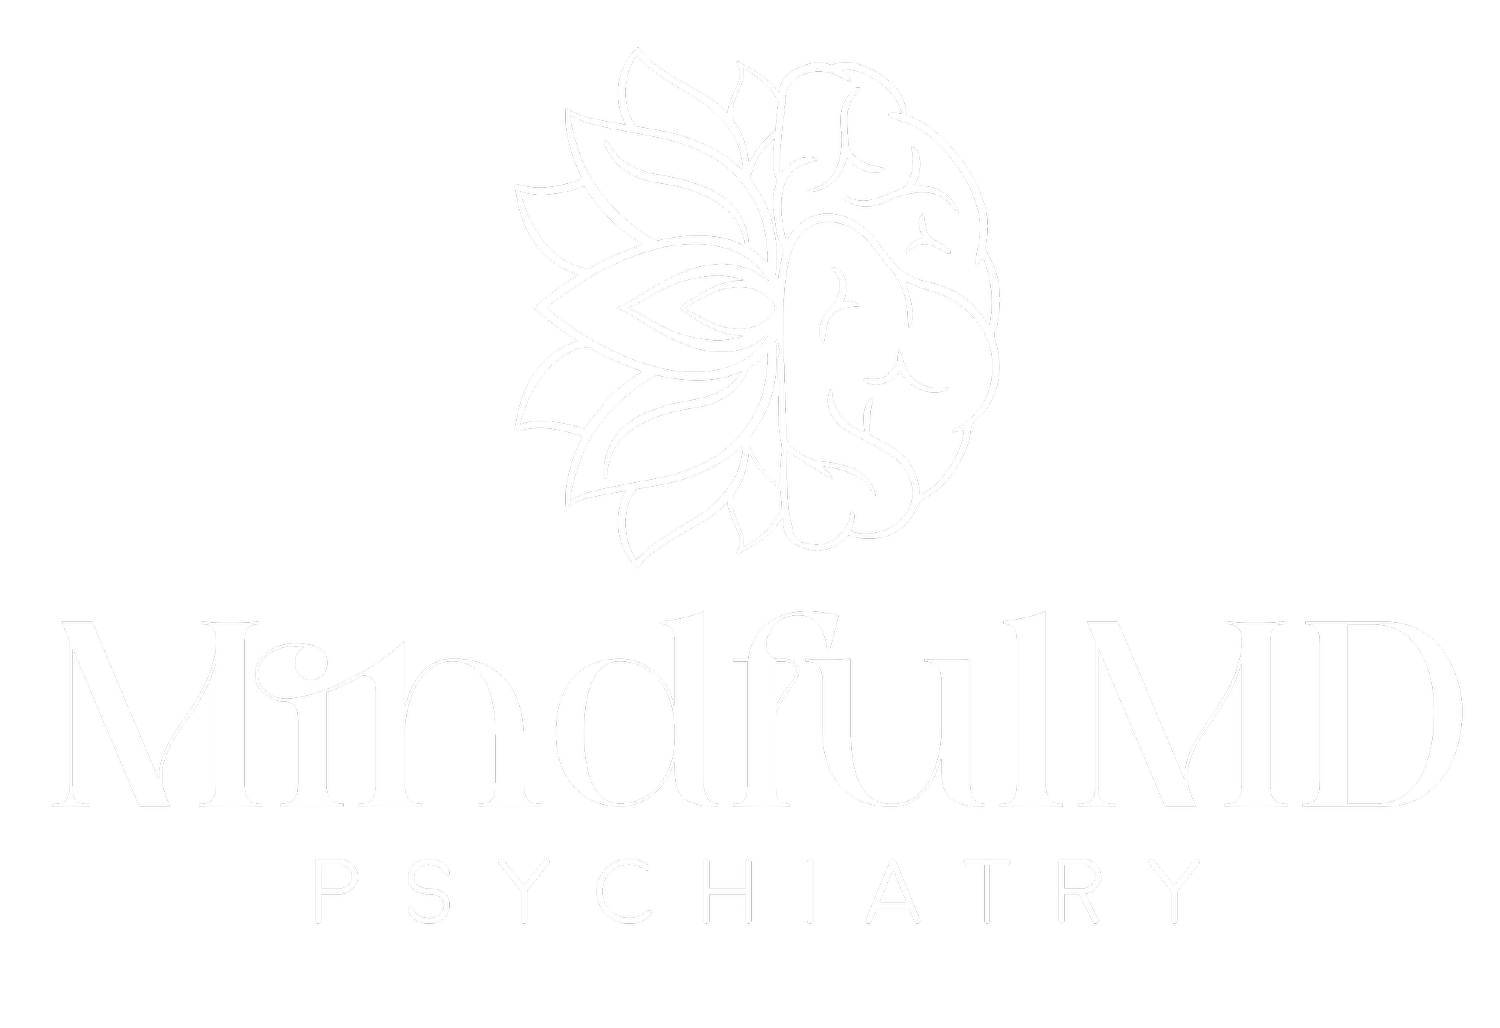 MindfulMD Psychiatry